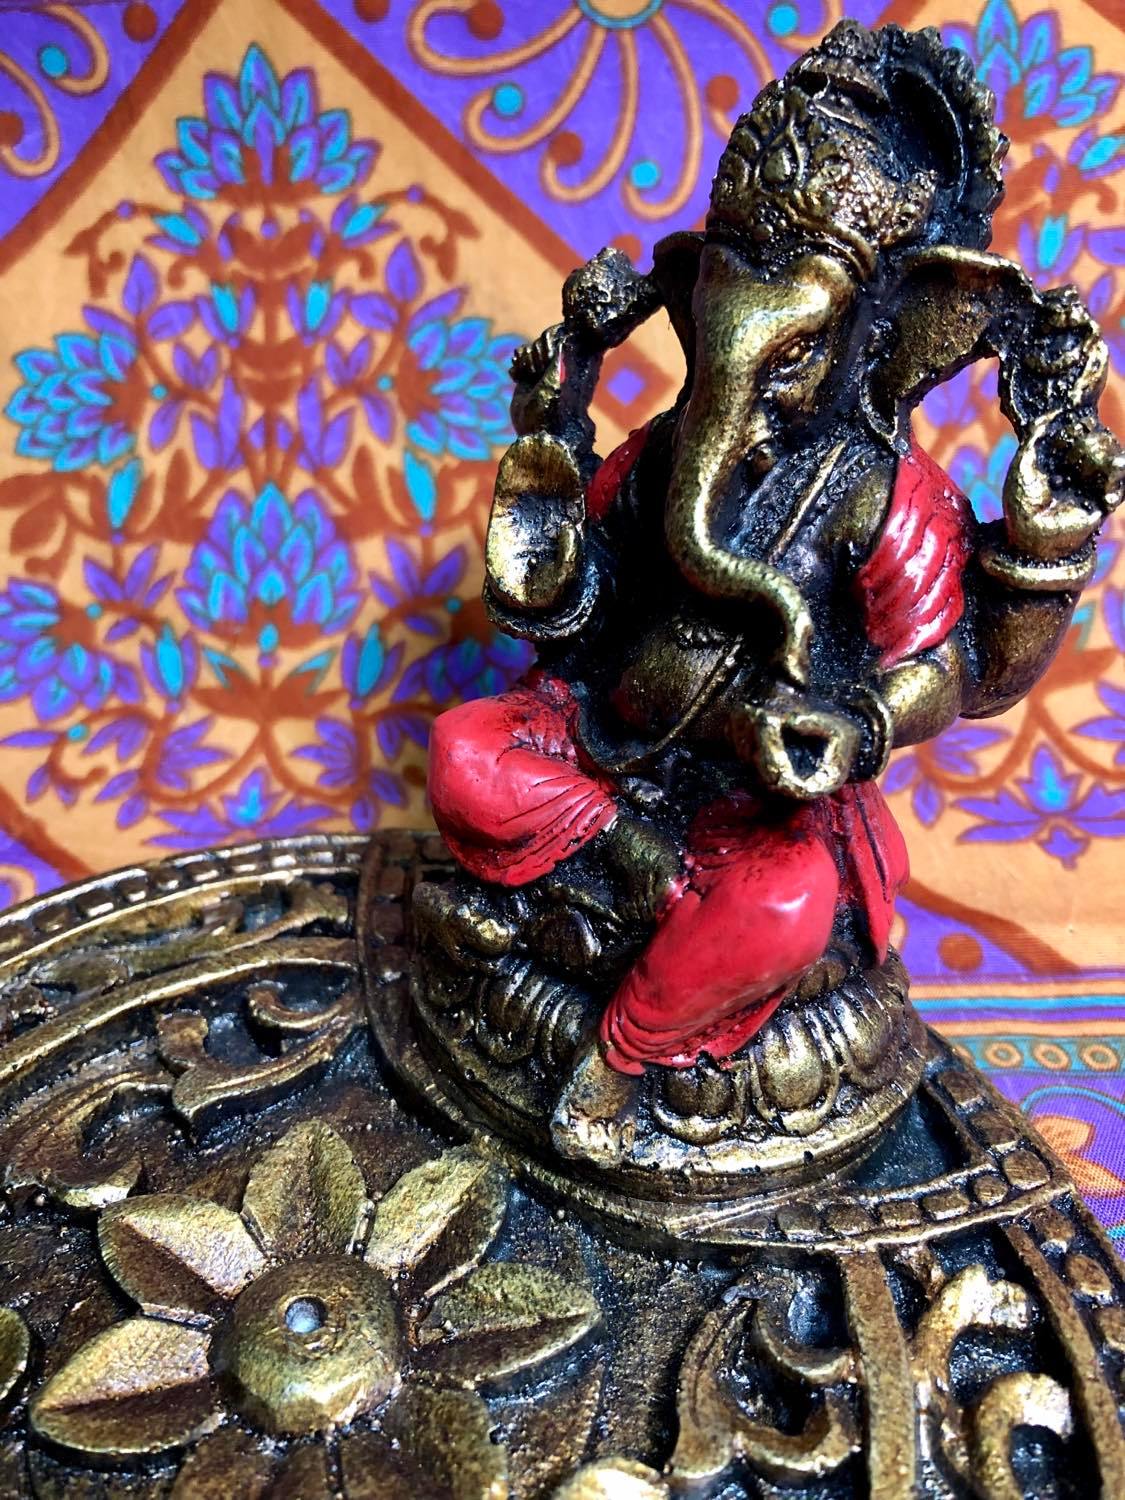 Ganesh Lotus Incense Holder